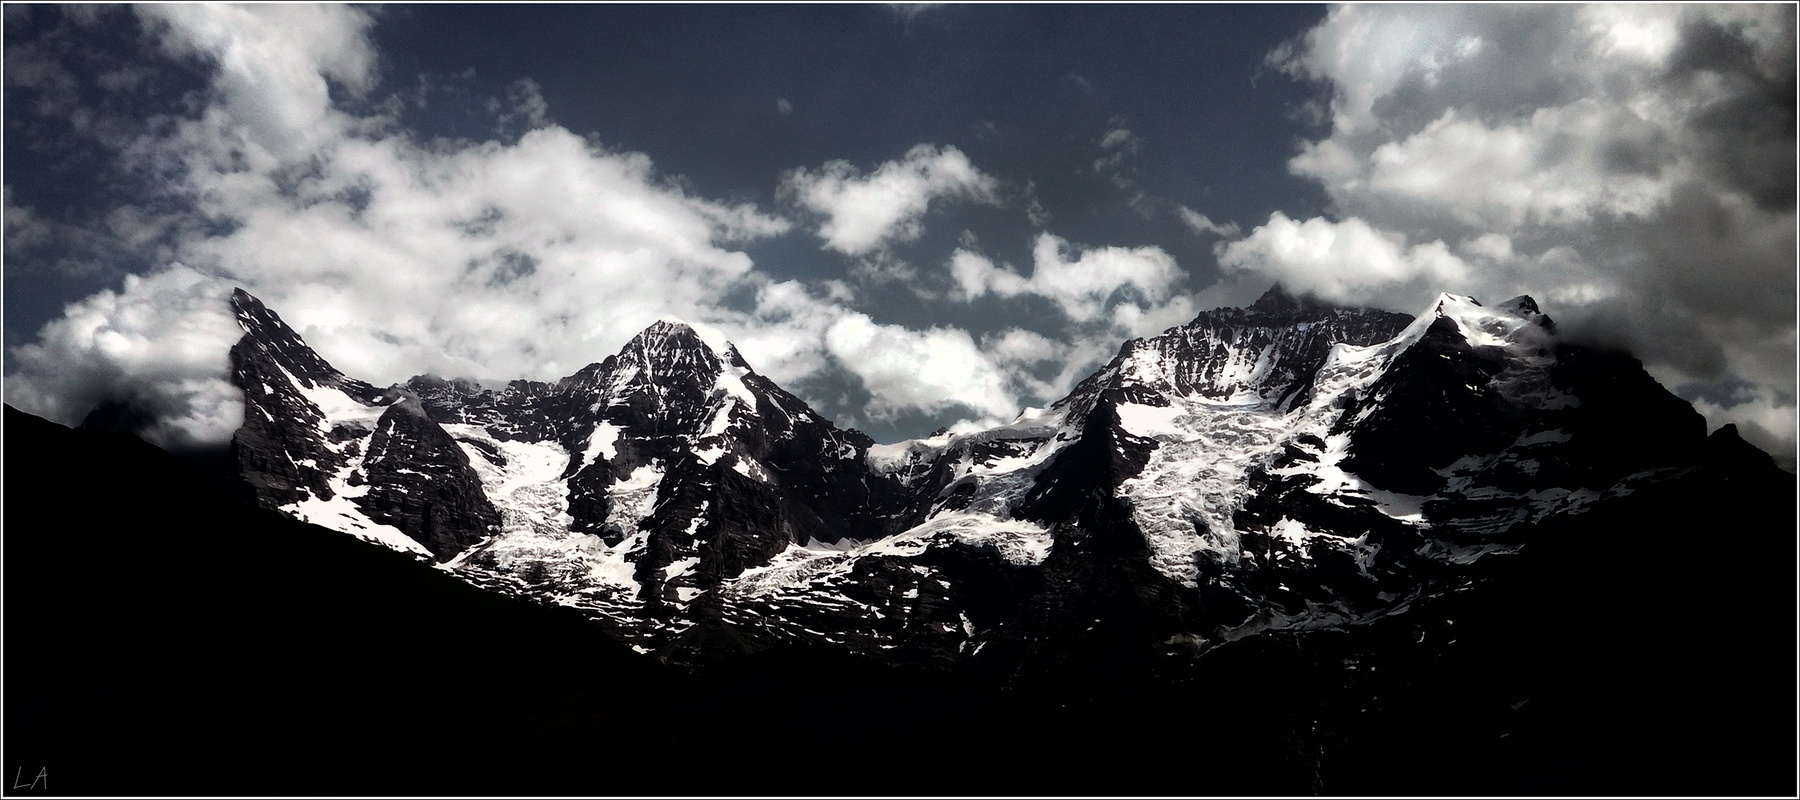 *Альпийские горы* фотография путешествия Швейцария горы Альпы природа пейзаж лето Фото.Сайт Photo.Sight Светлана Мамакина Lihgra Adventure